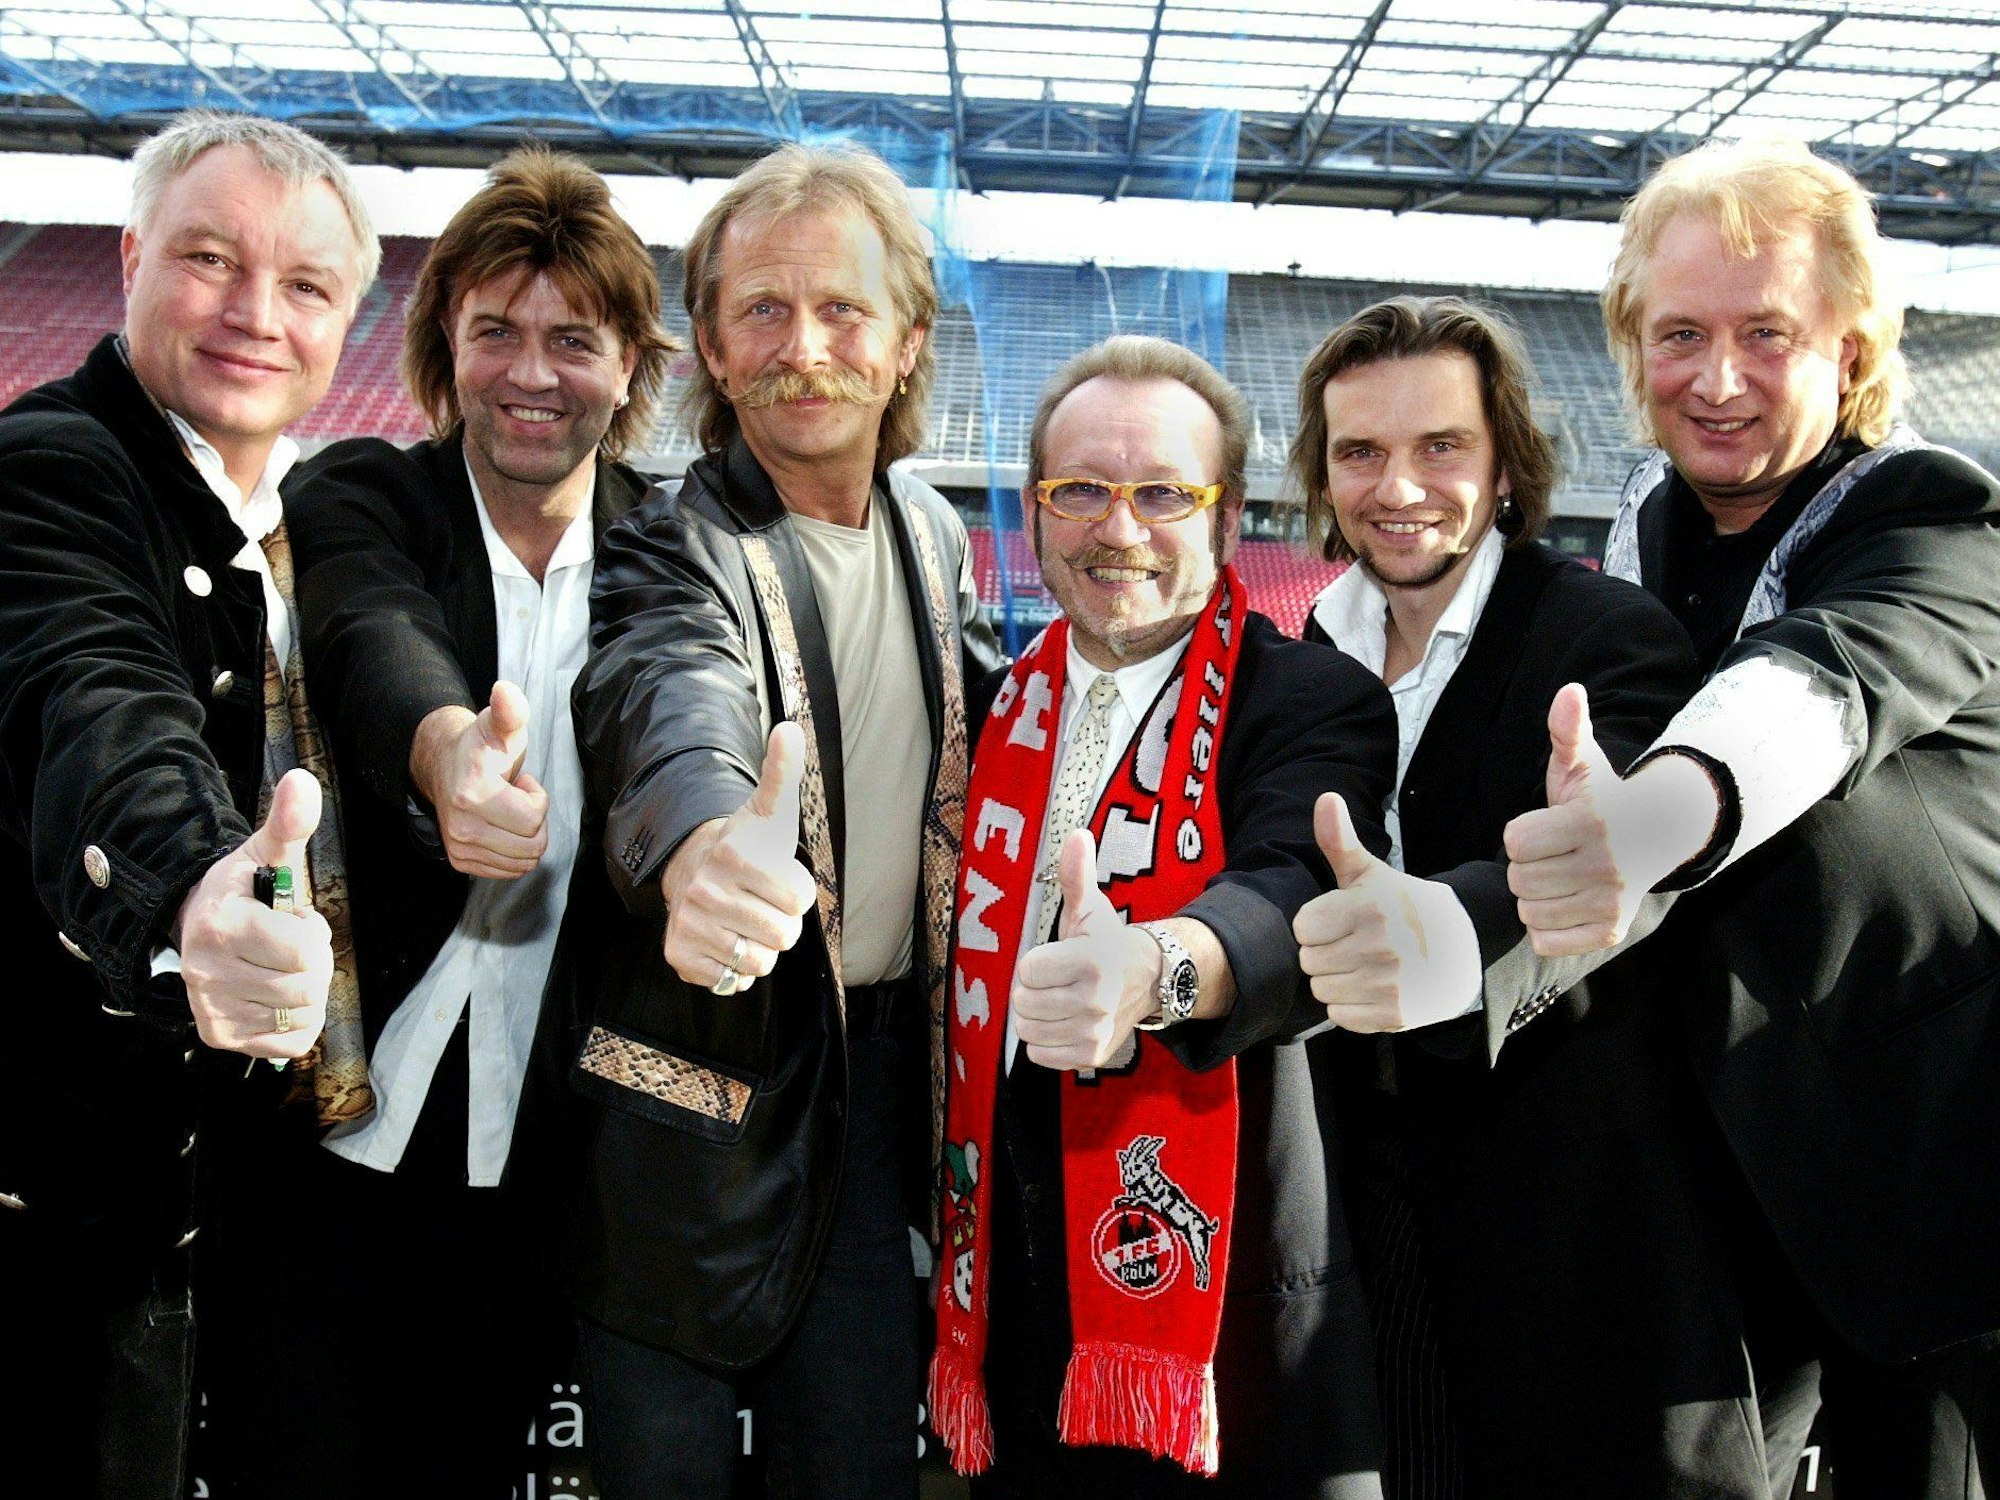 Das Kölner Sextett "Die Höhner", bestehend aus Henning, Hannes, Janus, Peter, Ralle und Jens, posiert am 7. Januar 2004 im Kölner Rhein-Energie-Stadion anlässlich der Präsentation ihres Studioalbums.